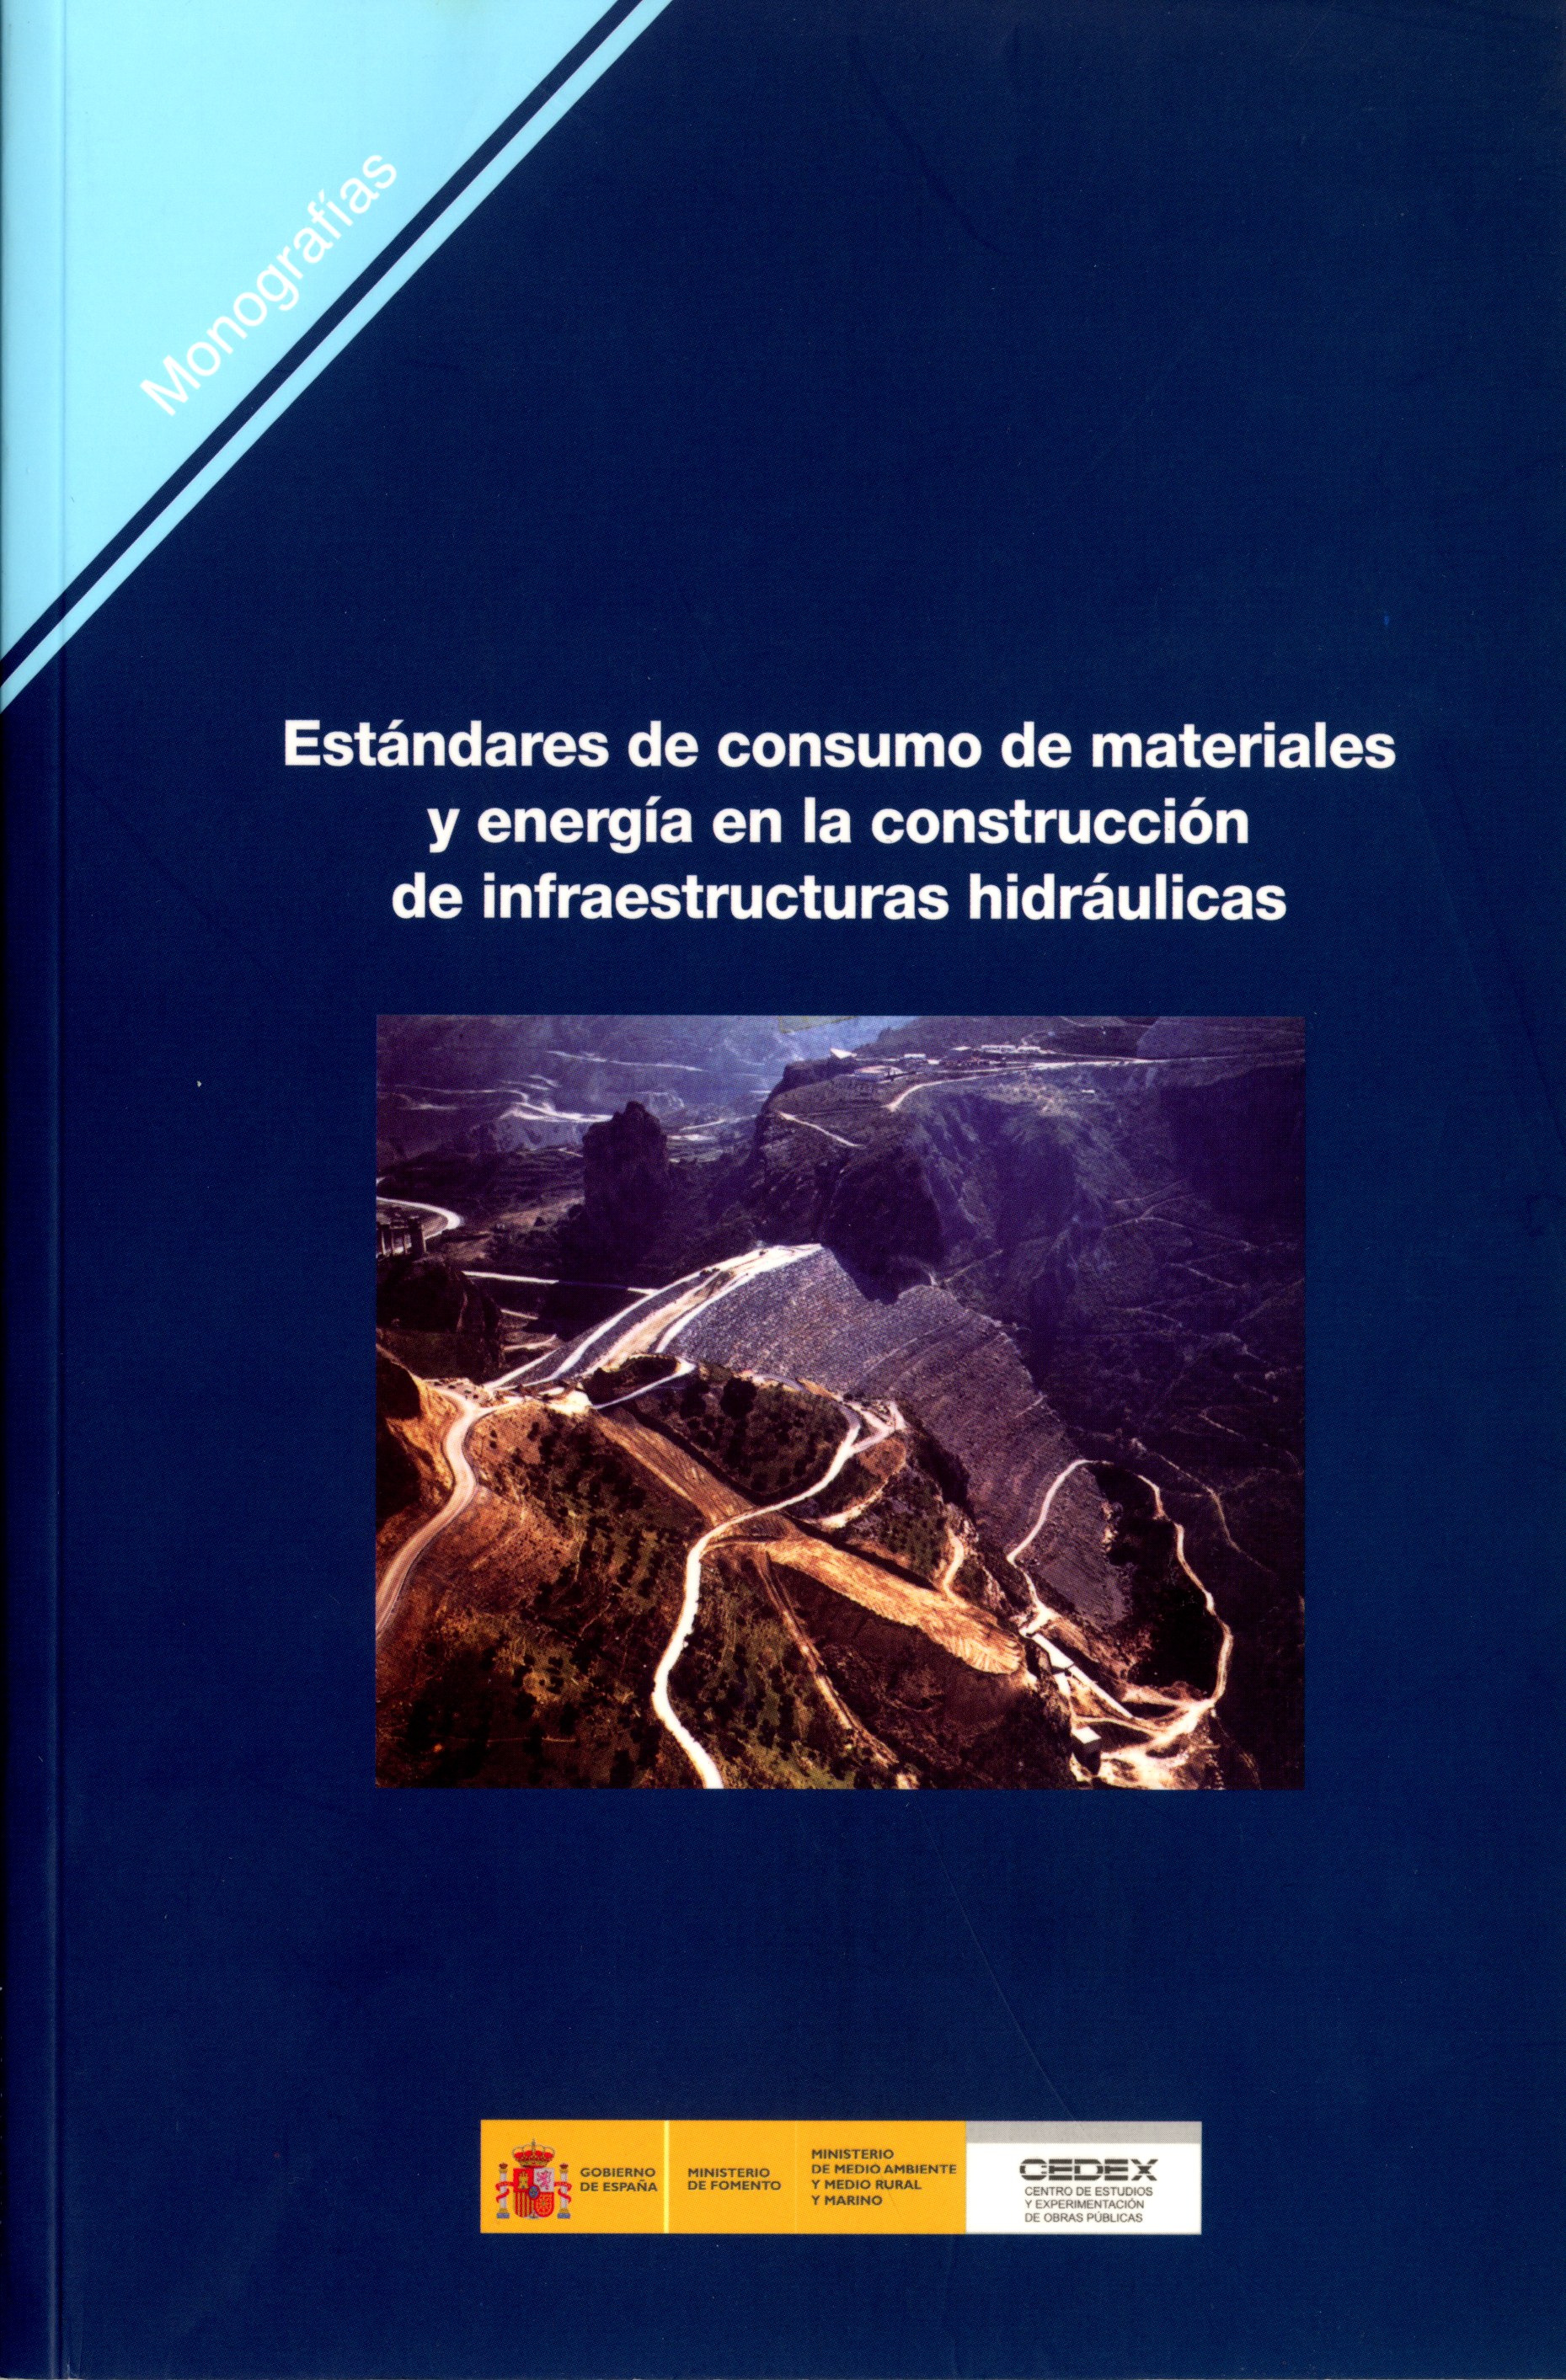 ESTÁNDARES DE CONSUMO DE MATERIALES Y ENERGÍA EN LA CONSTRUCCIÓN DE INFRAESTRUCTURAS HIDRÁULICA